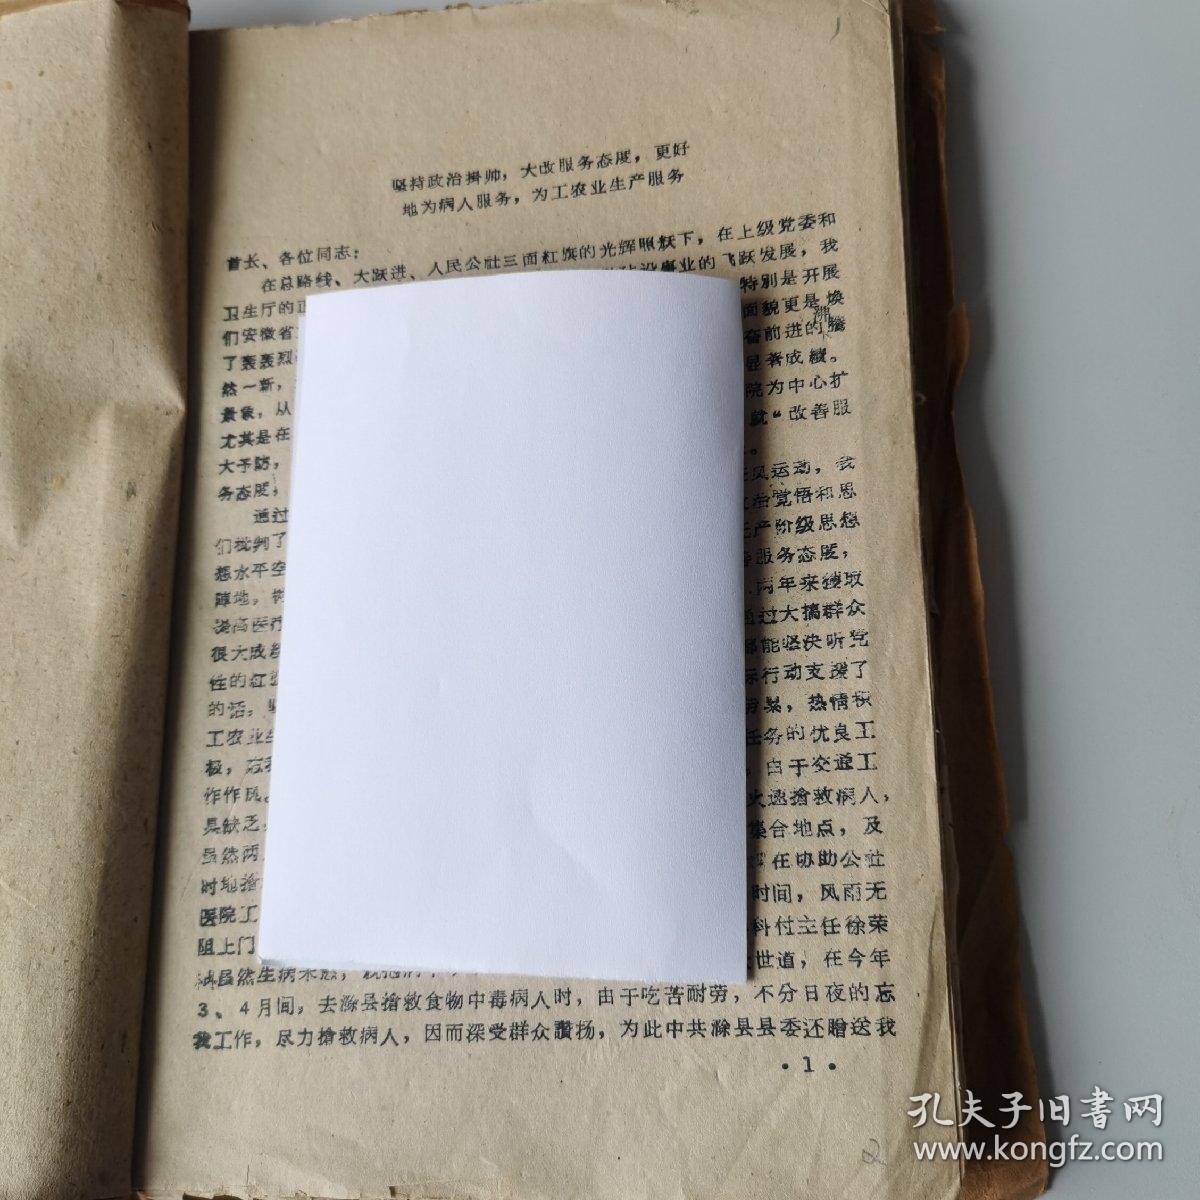 安徽省医院工作现场会议材料专卷（二）1960年，安徽省立医院材料